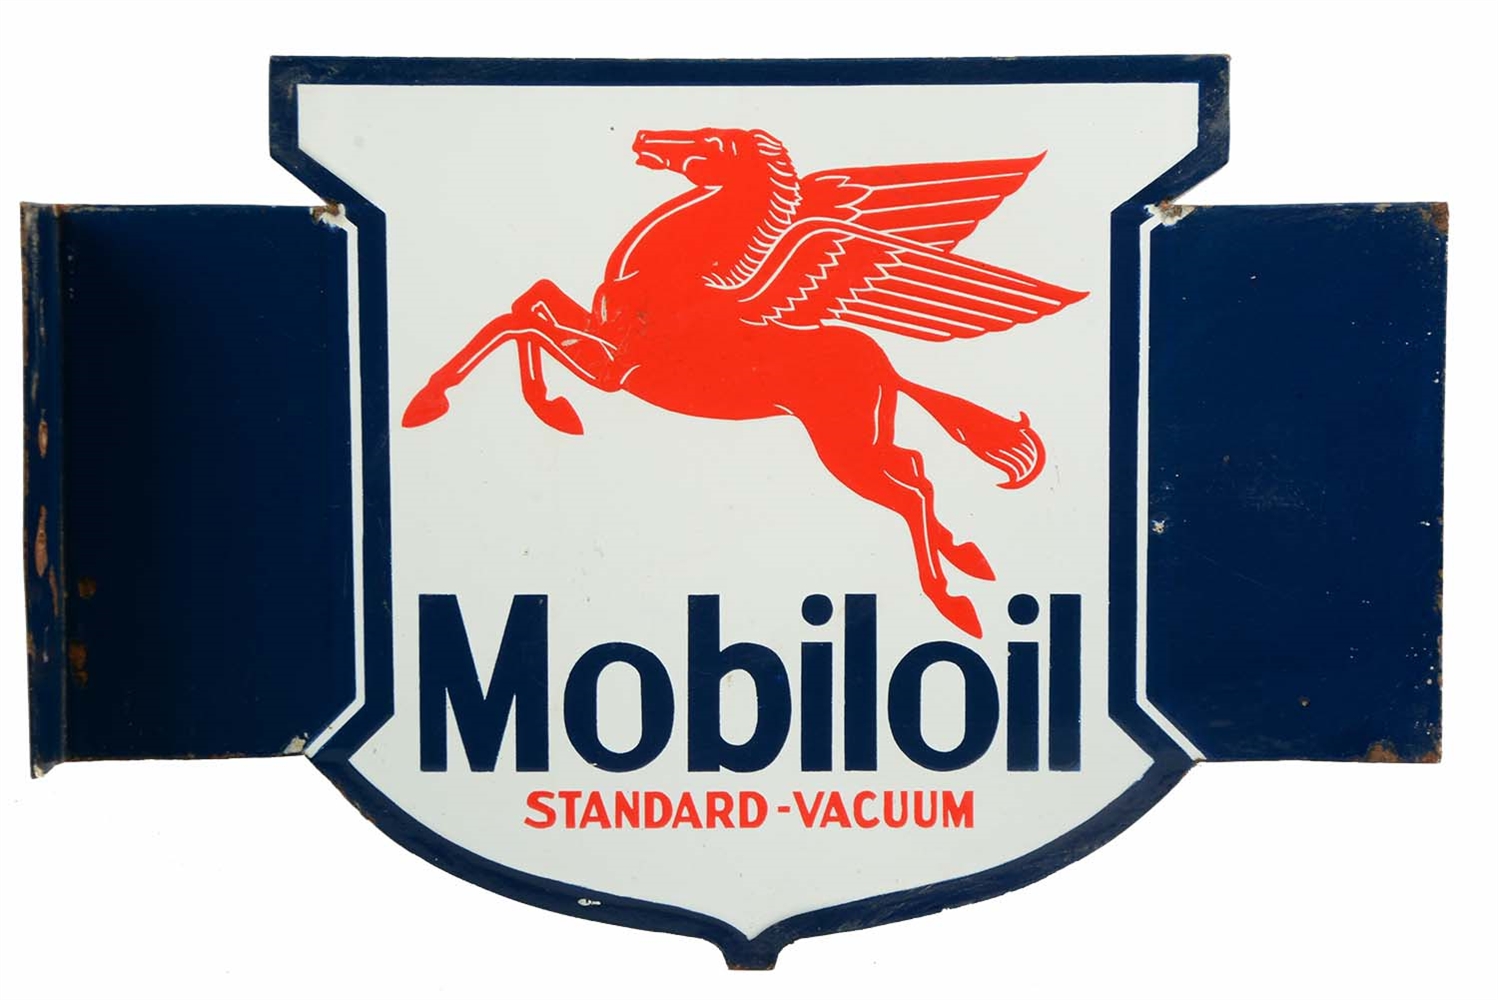 MOBILOIL STANDARD-VACCUUM PORCELAIN FLANGE SIGN.